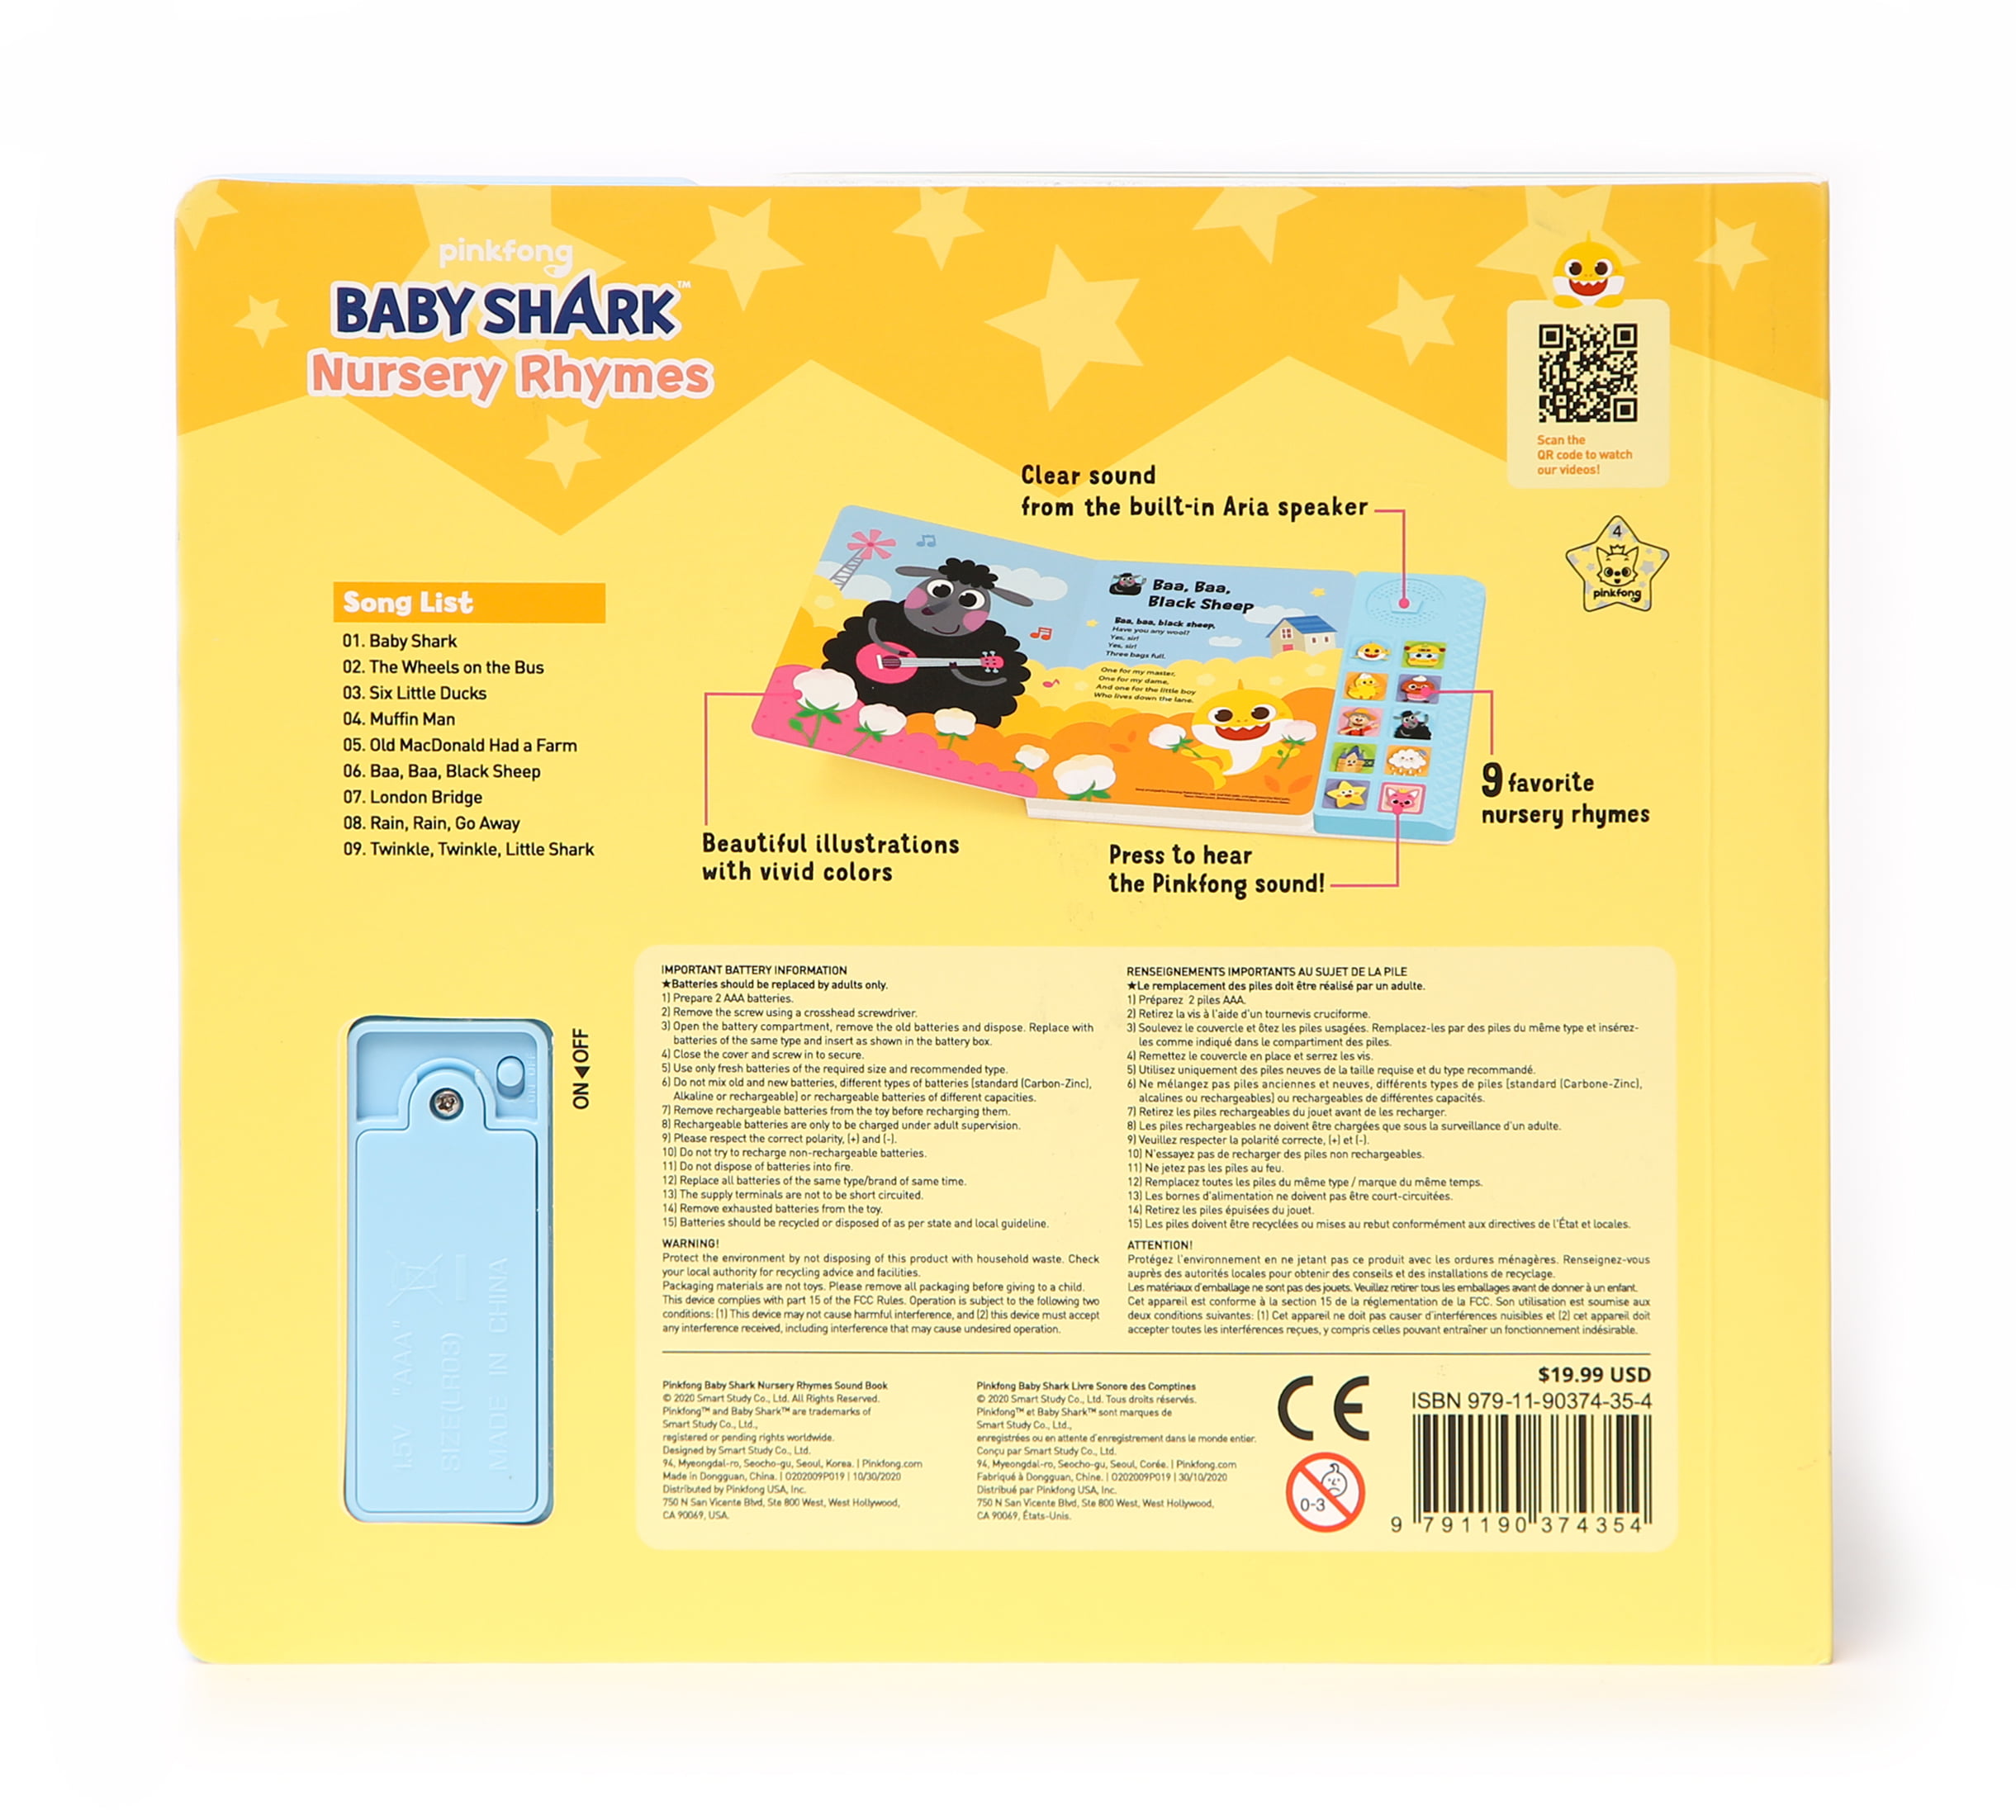 Baby Shark Bedtime Songs Sound Book (10 Button) 